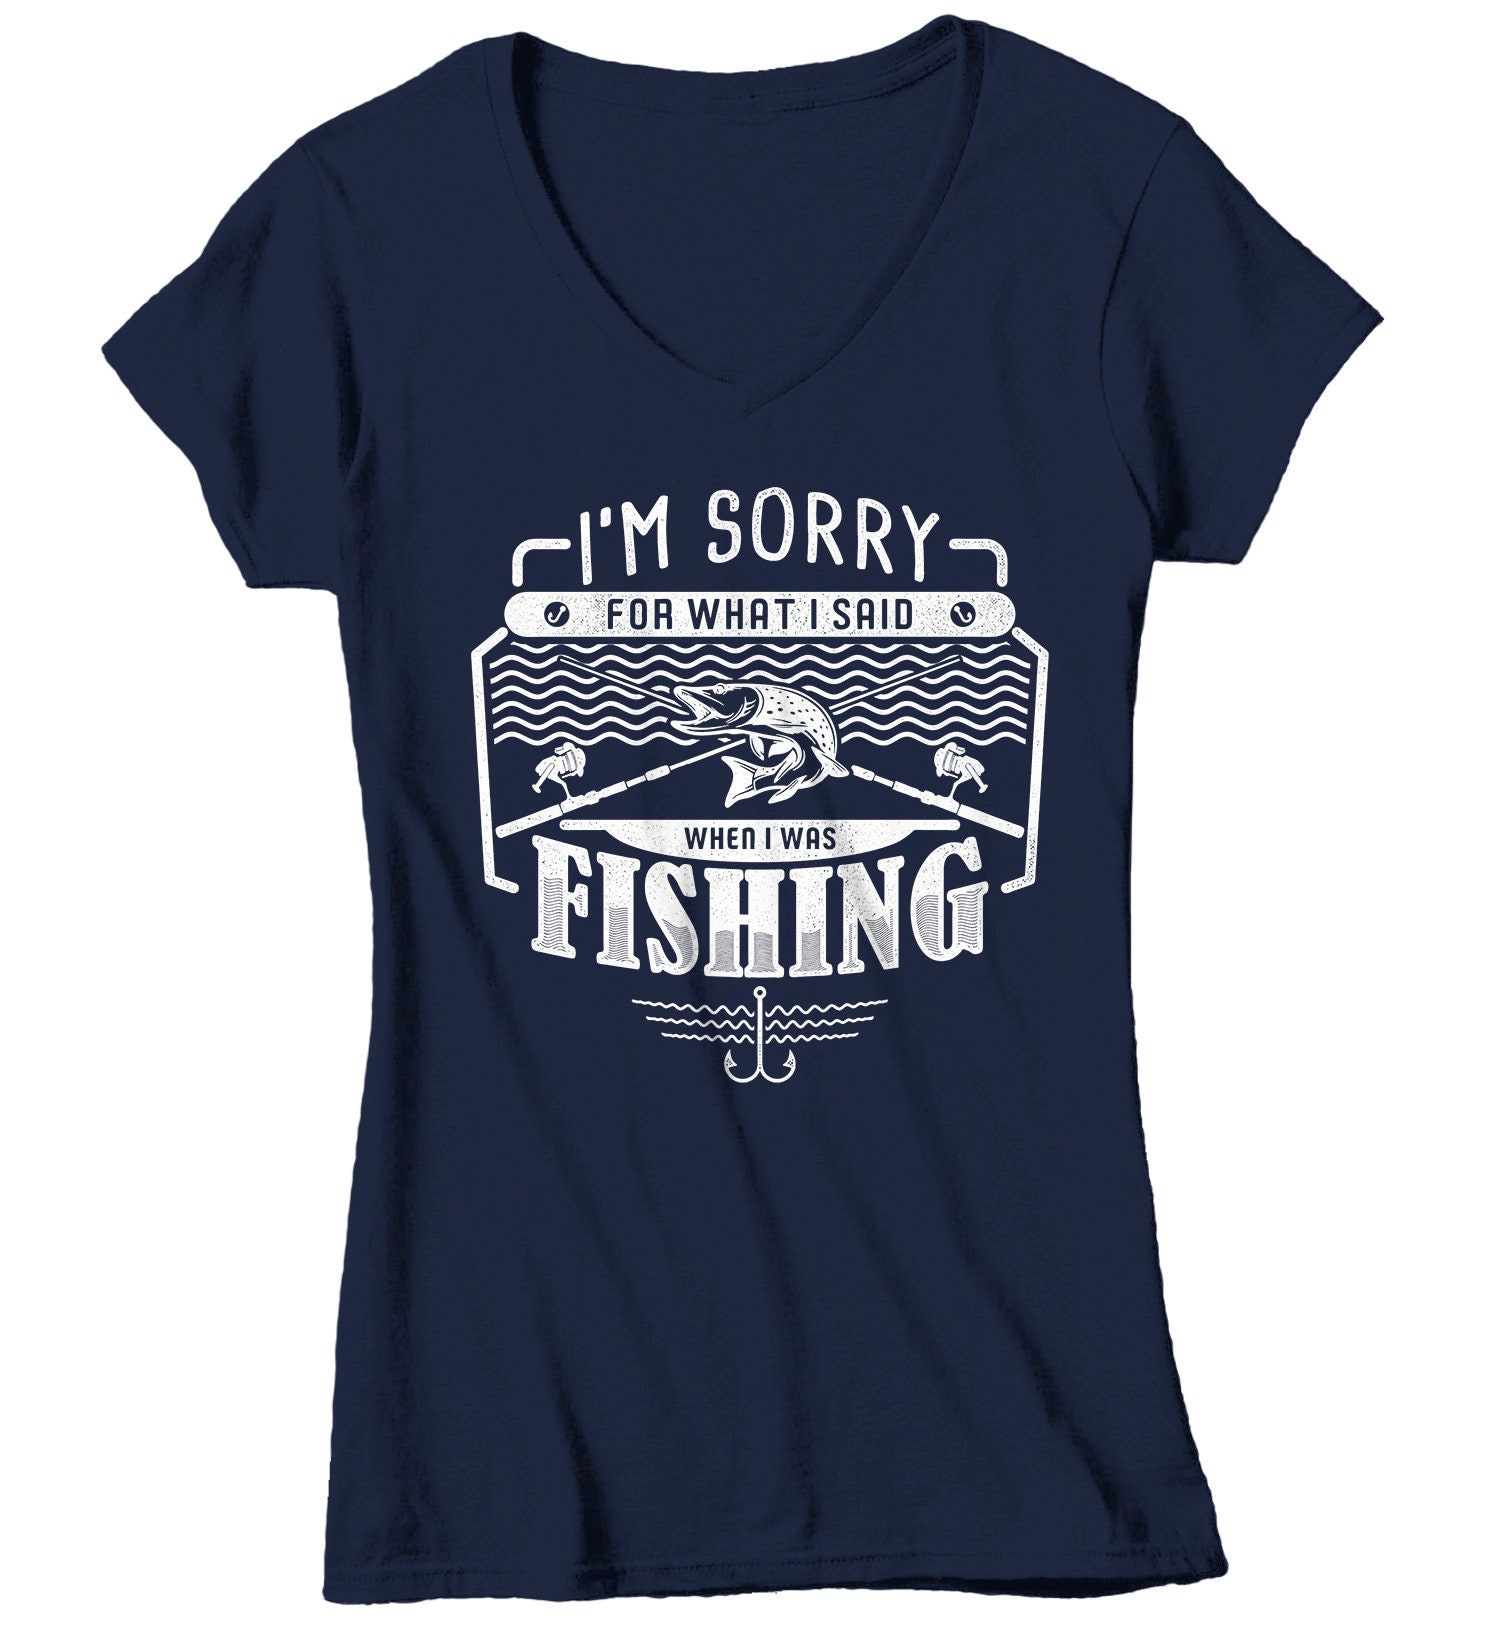 Women's Fishing T Shirt Sorry For Said While Fishing Shirt | Etsy